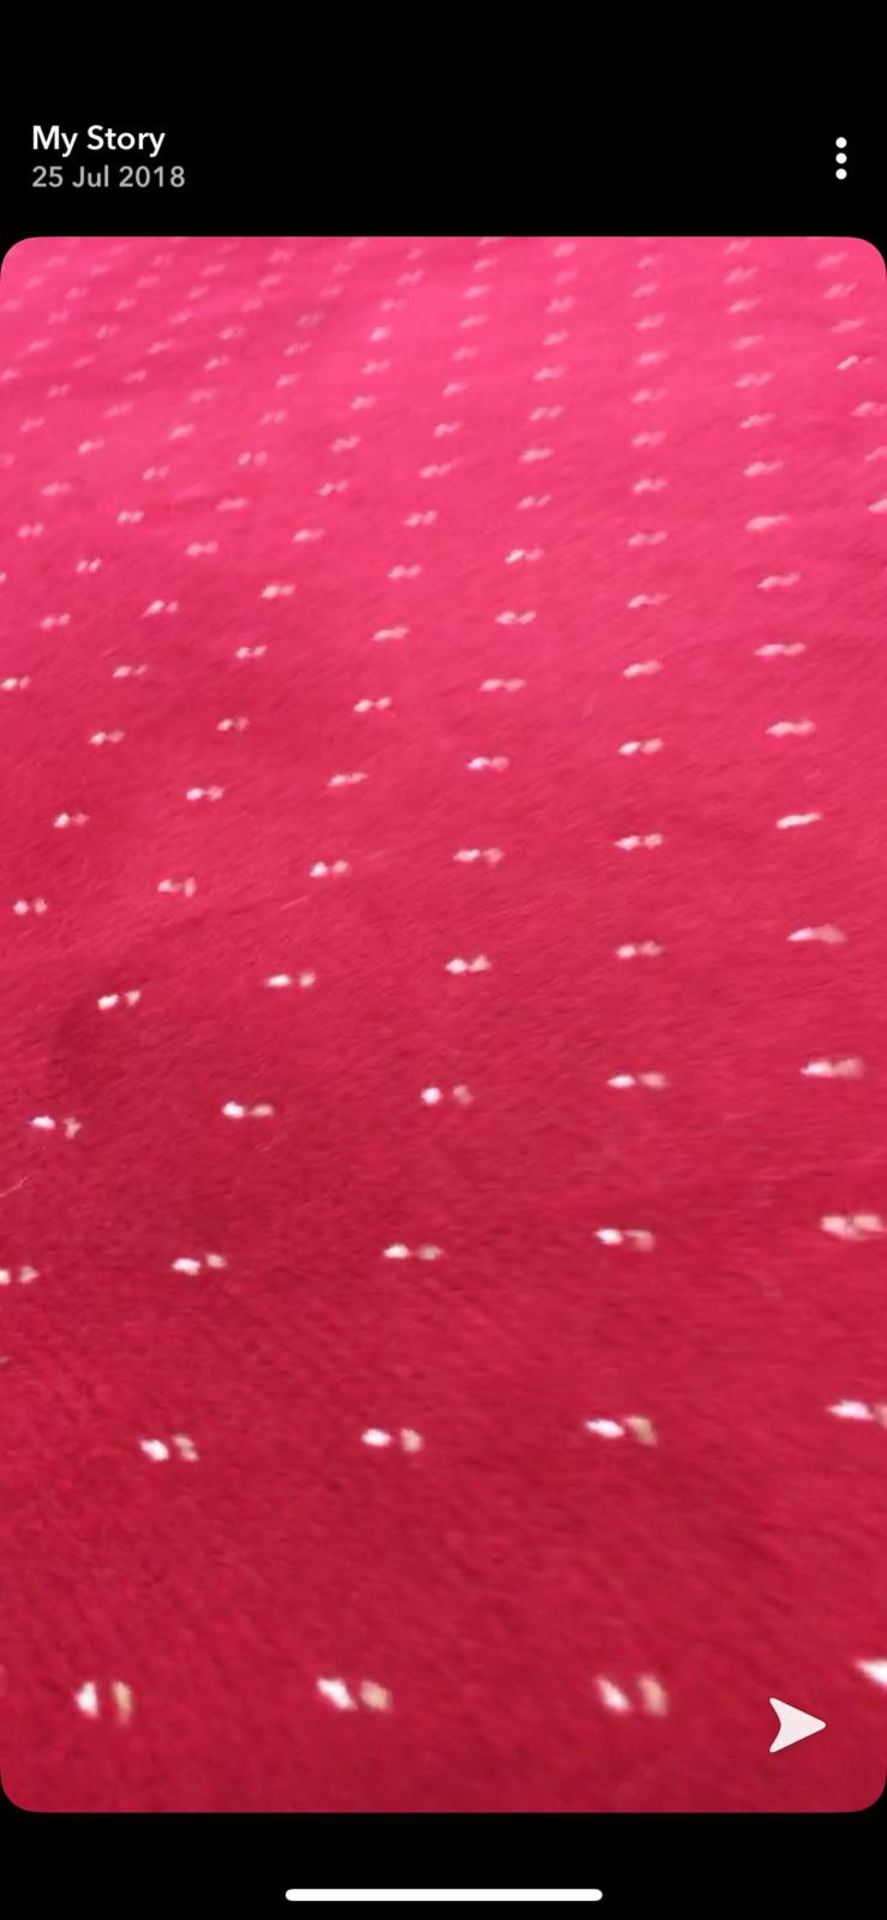 1 Roll, Red Wilton Carpet 13 metres x 4 Metres